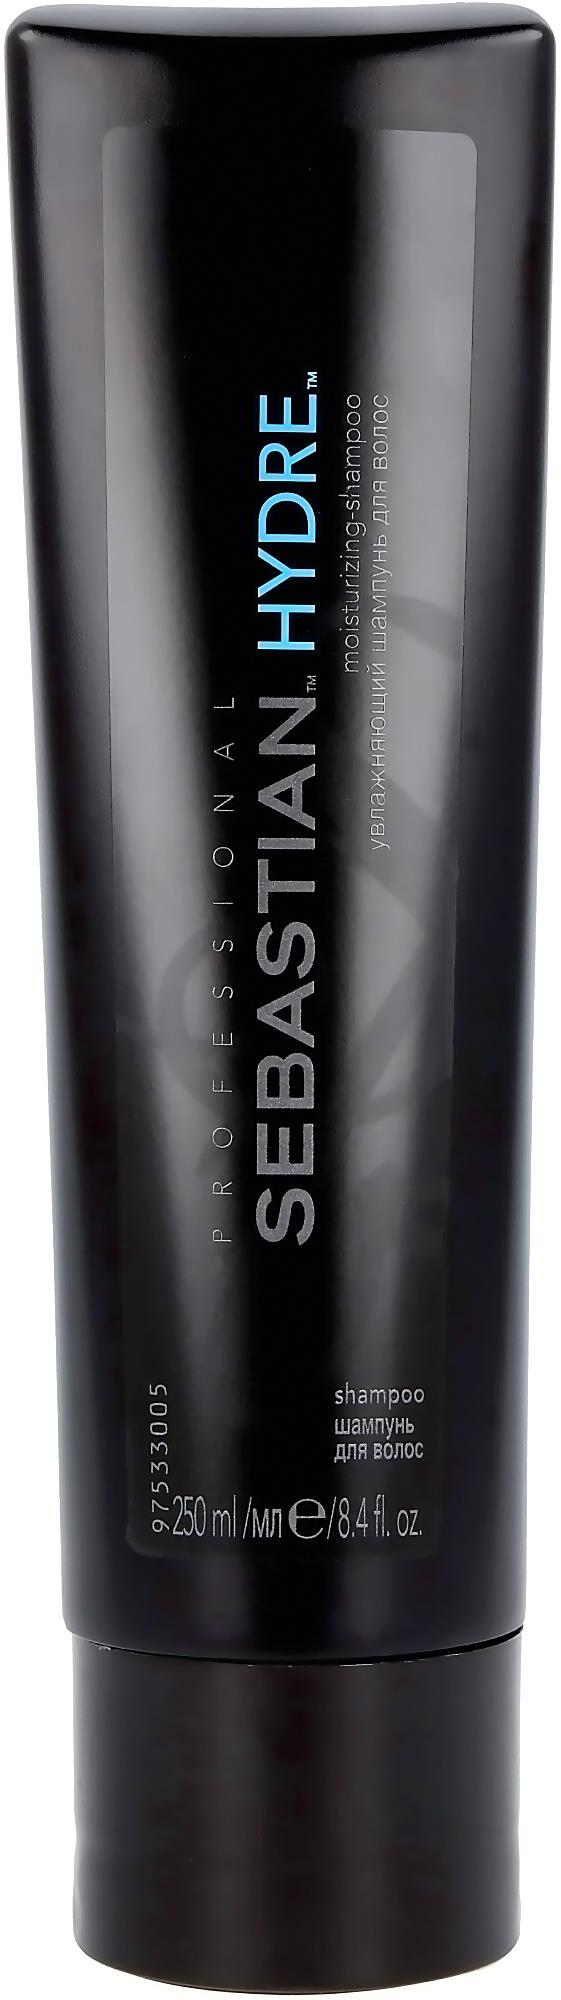 Indsprøjtning sø Ikke kompliceret Sebastian Professional Hydre Shampoo 250 ml | lyko.com